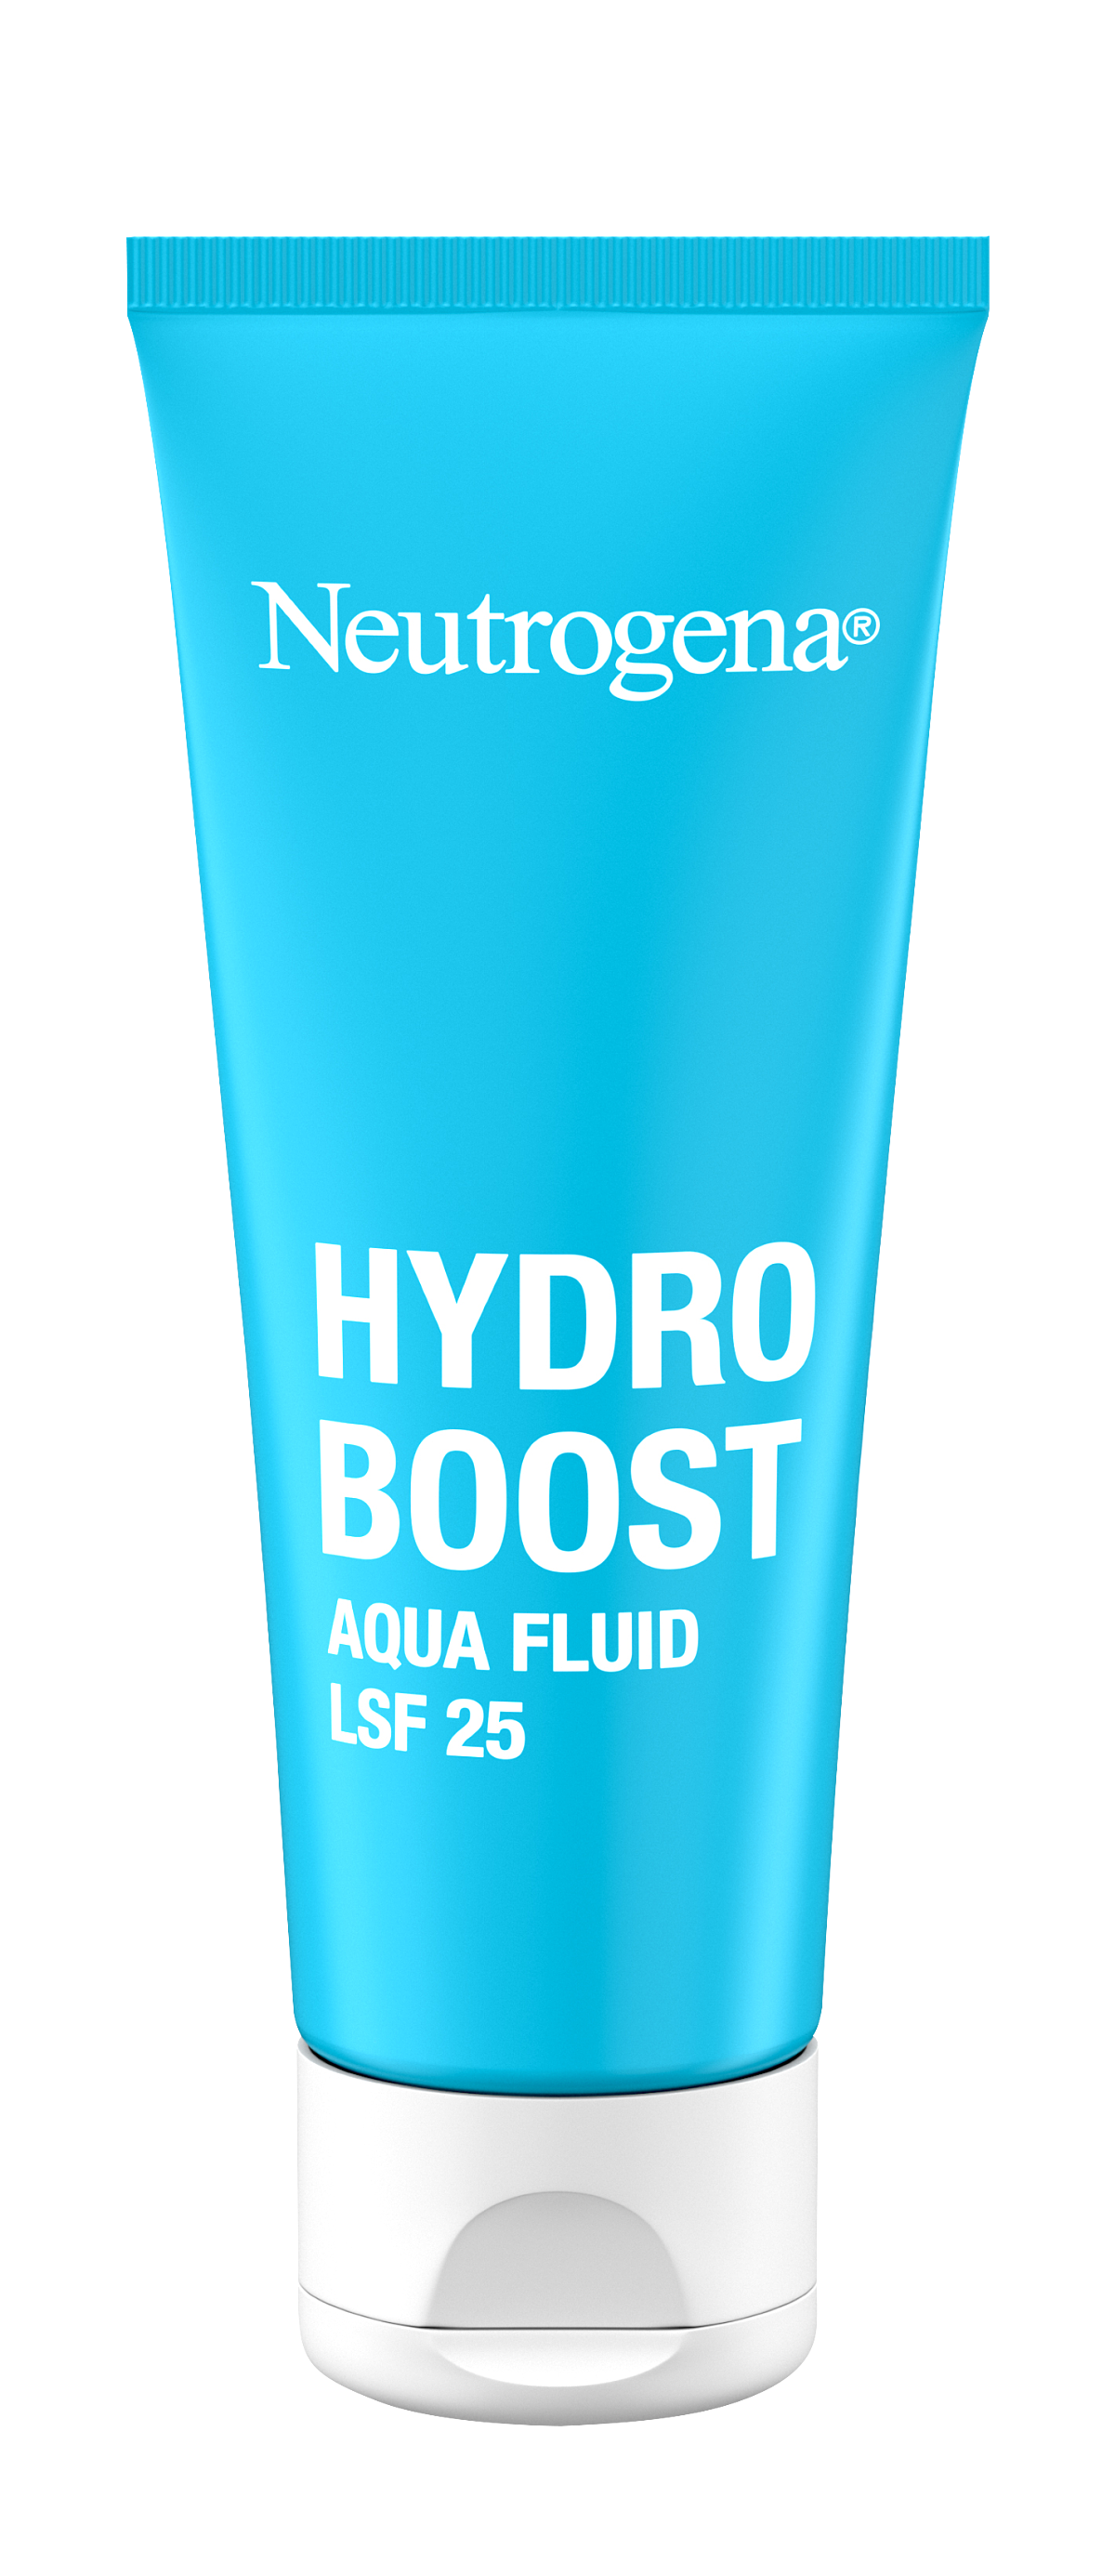 Neutrogena_Hydro_Boost_Aqua_Fluid_LSF25